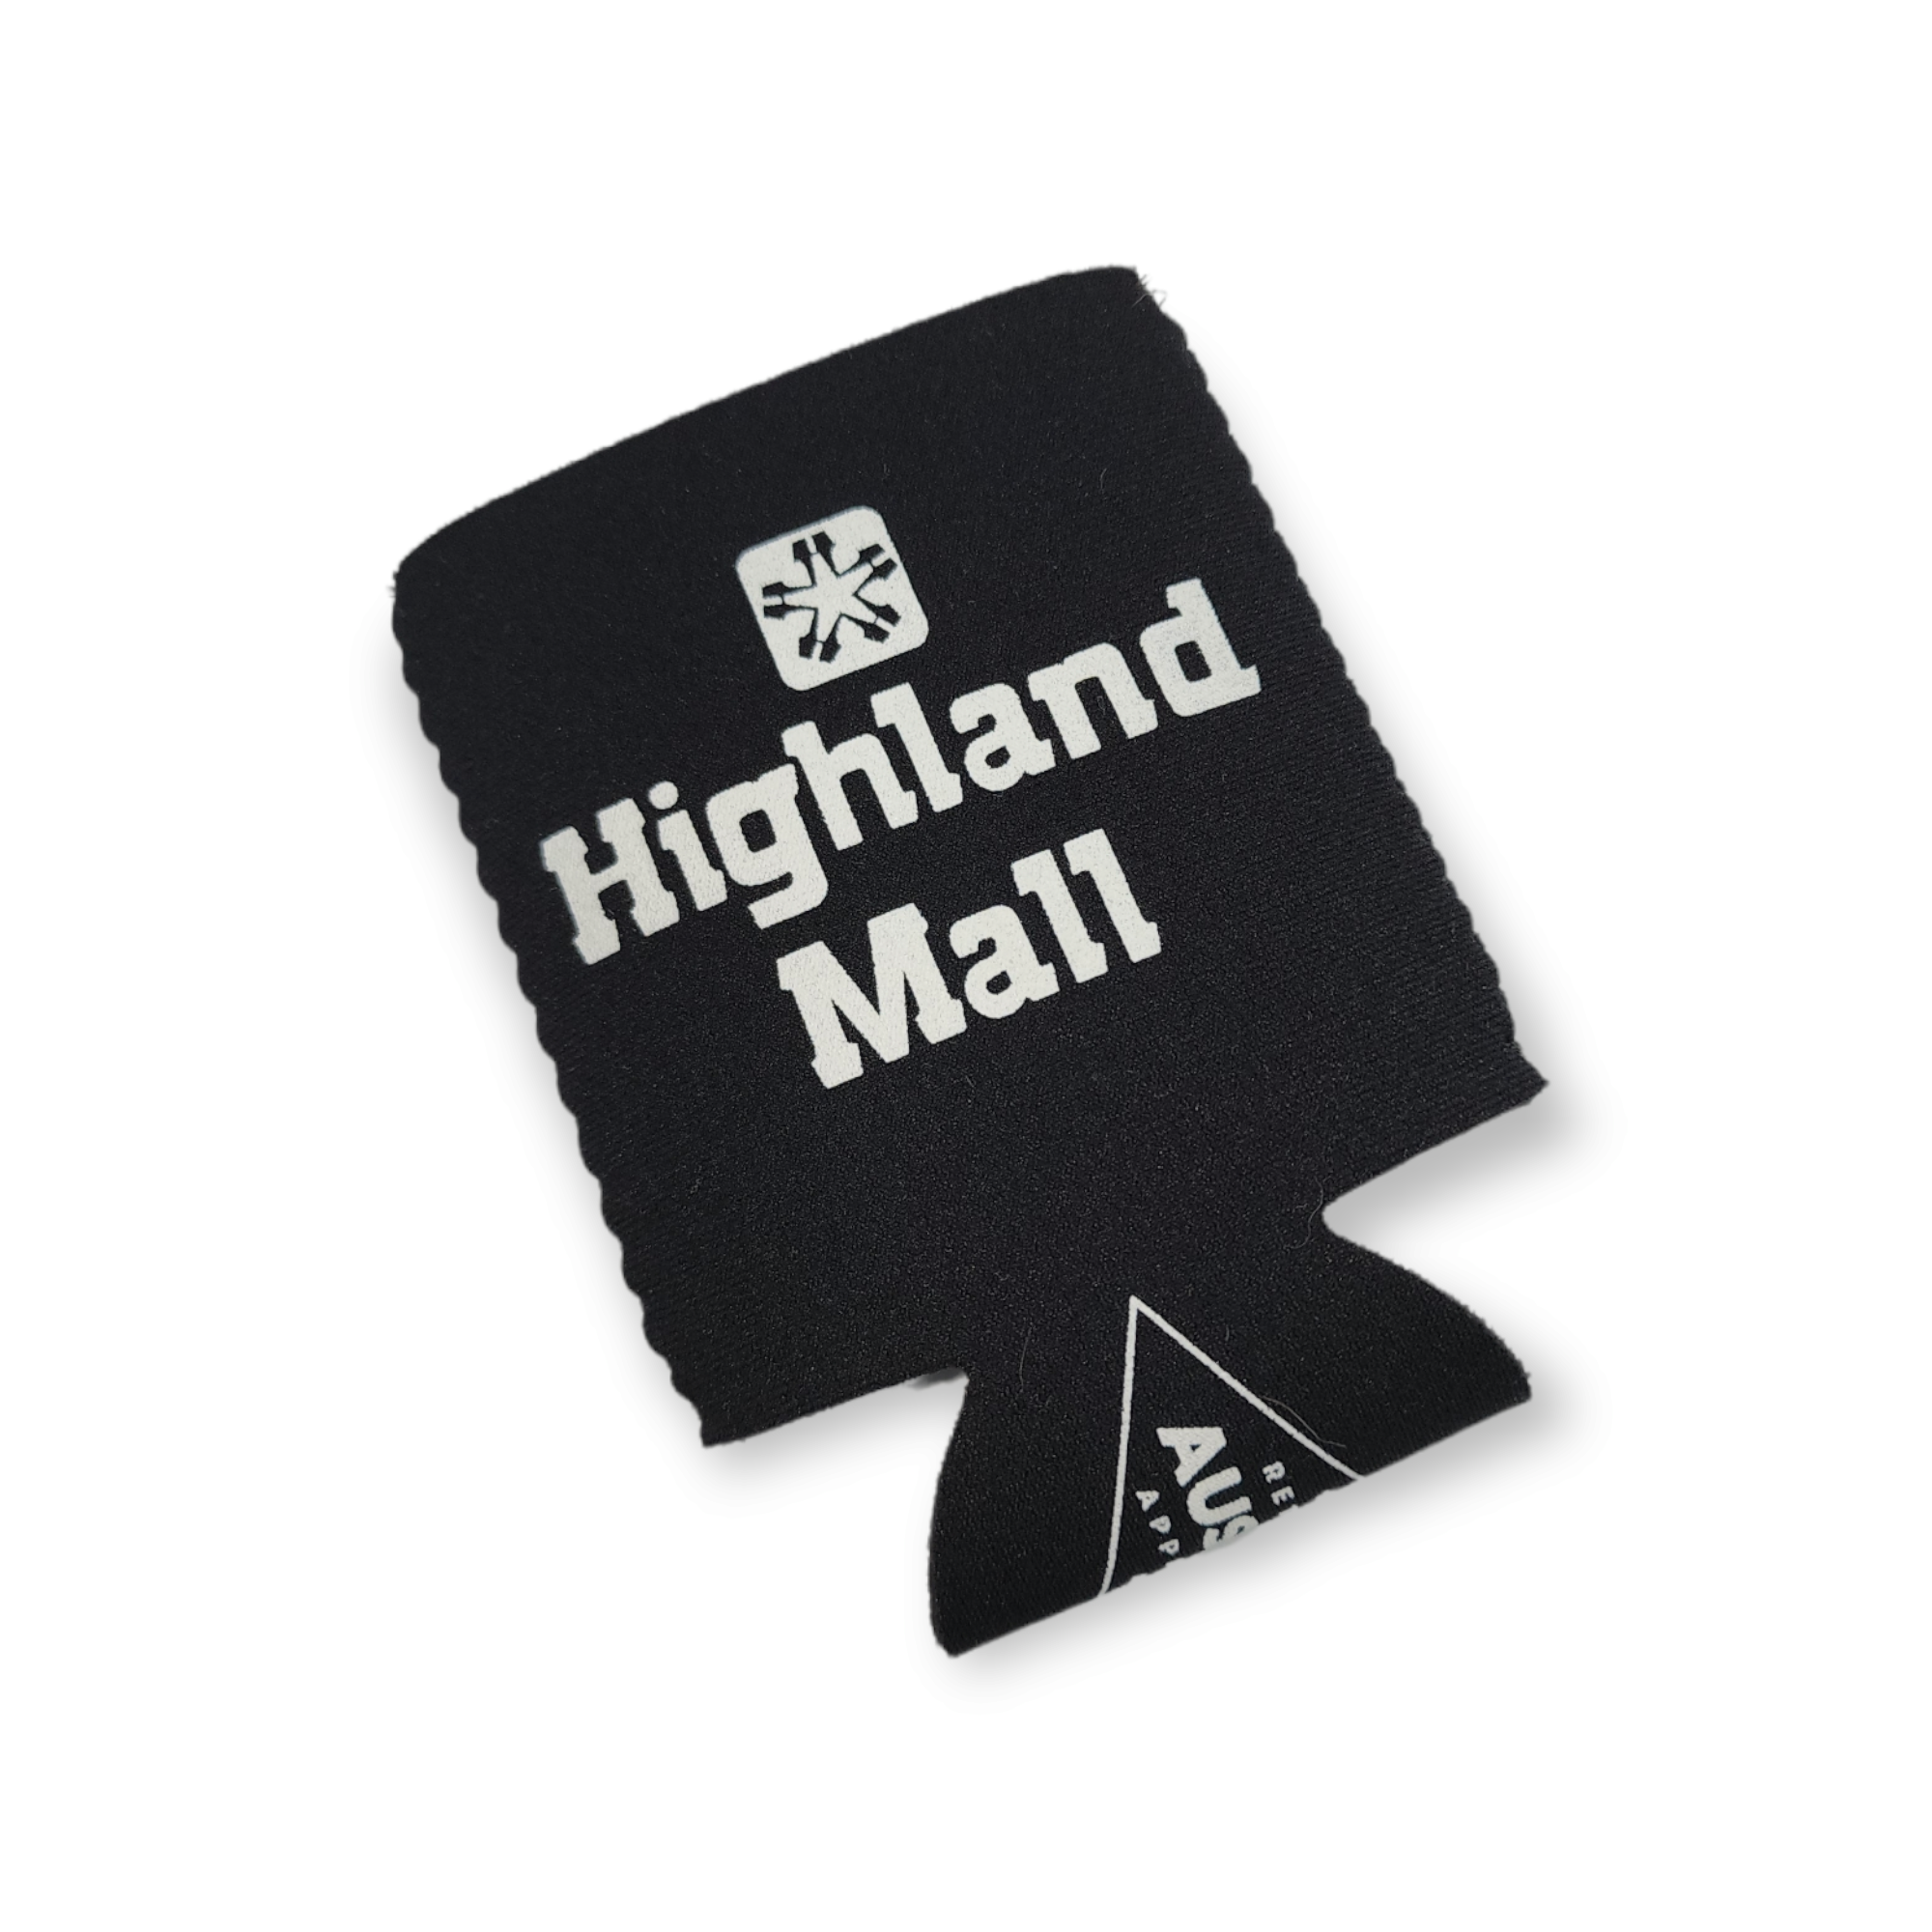 Highland Mall Neoprene Can Holder